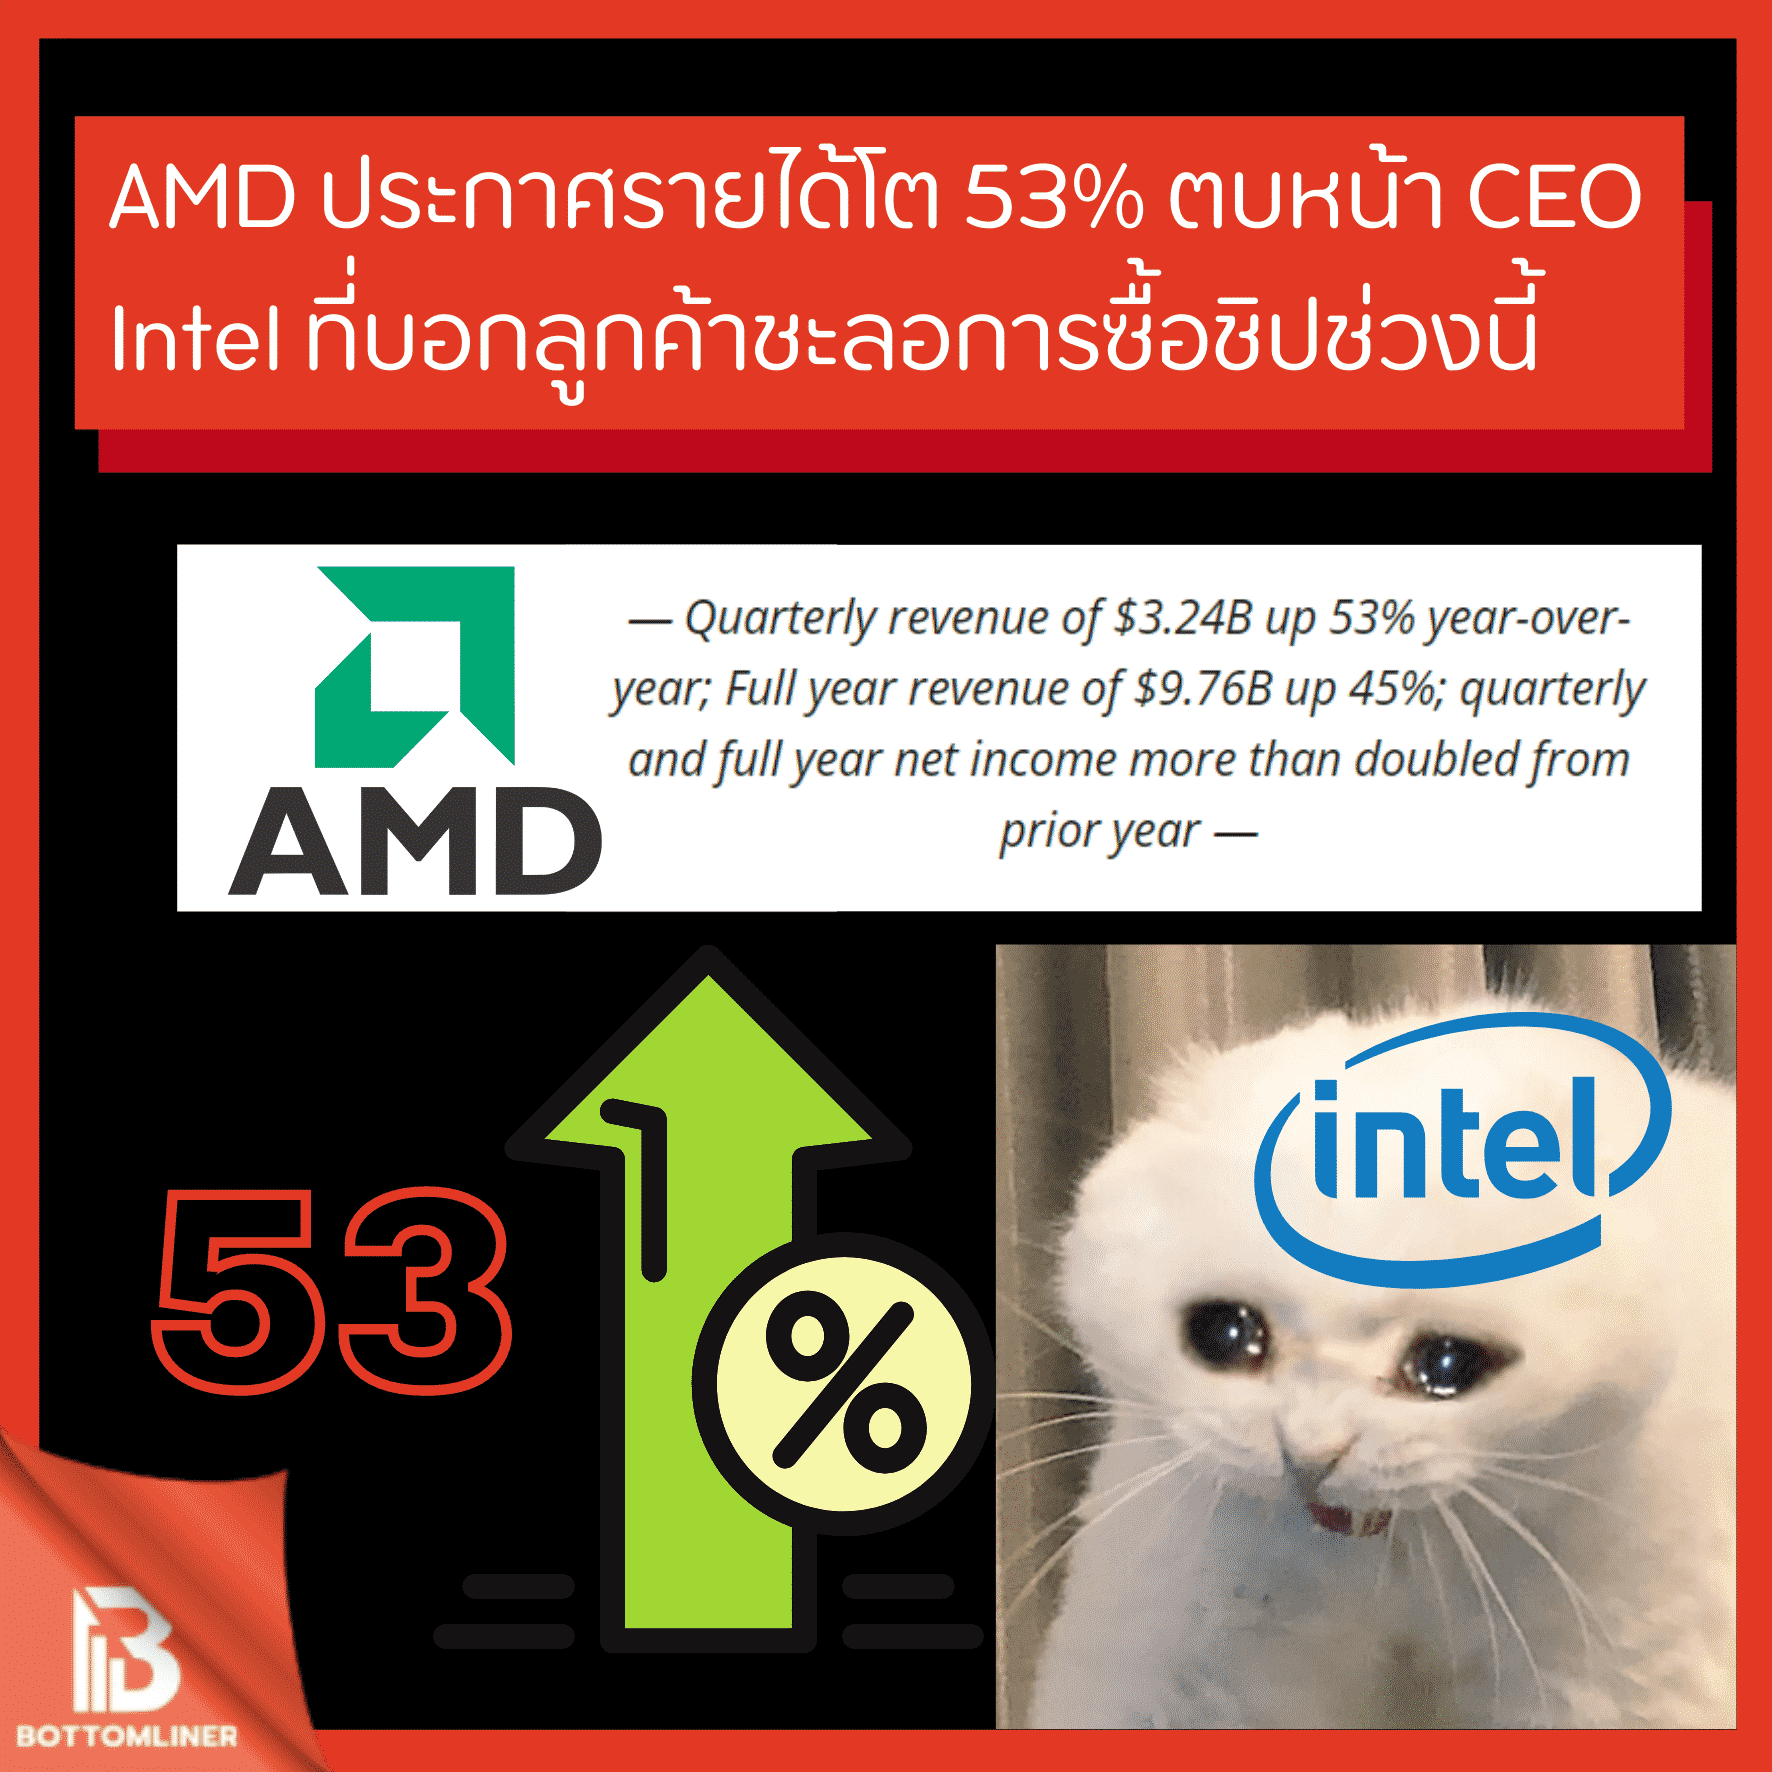 AMD ประกาศรายได้โต 53% ตบหน้า CEO Intel ที่บอกลูกค้าเลือกชะลอการซื้อชิปช่วงนี้